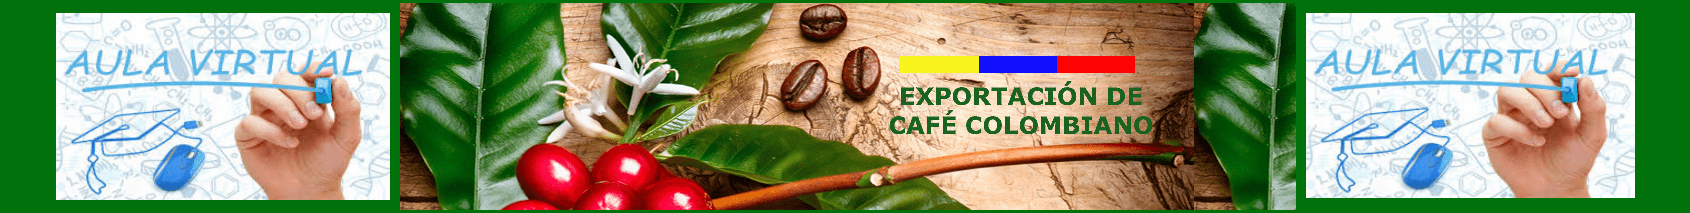 Aula Virtual-Exportación de Café. Desarrollar el sistema de educación virtual, que permita incrementar la calidad, pertinencia y relevancia de las actividades inherentes a nuestra empresa, a fin de contribuir a su mejora continua. Contribuir al desarrollo Agropecuario y Turístico de Colombia.